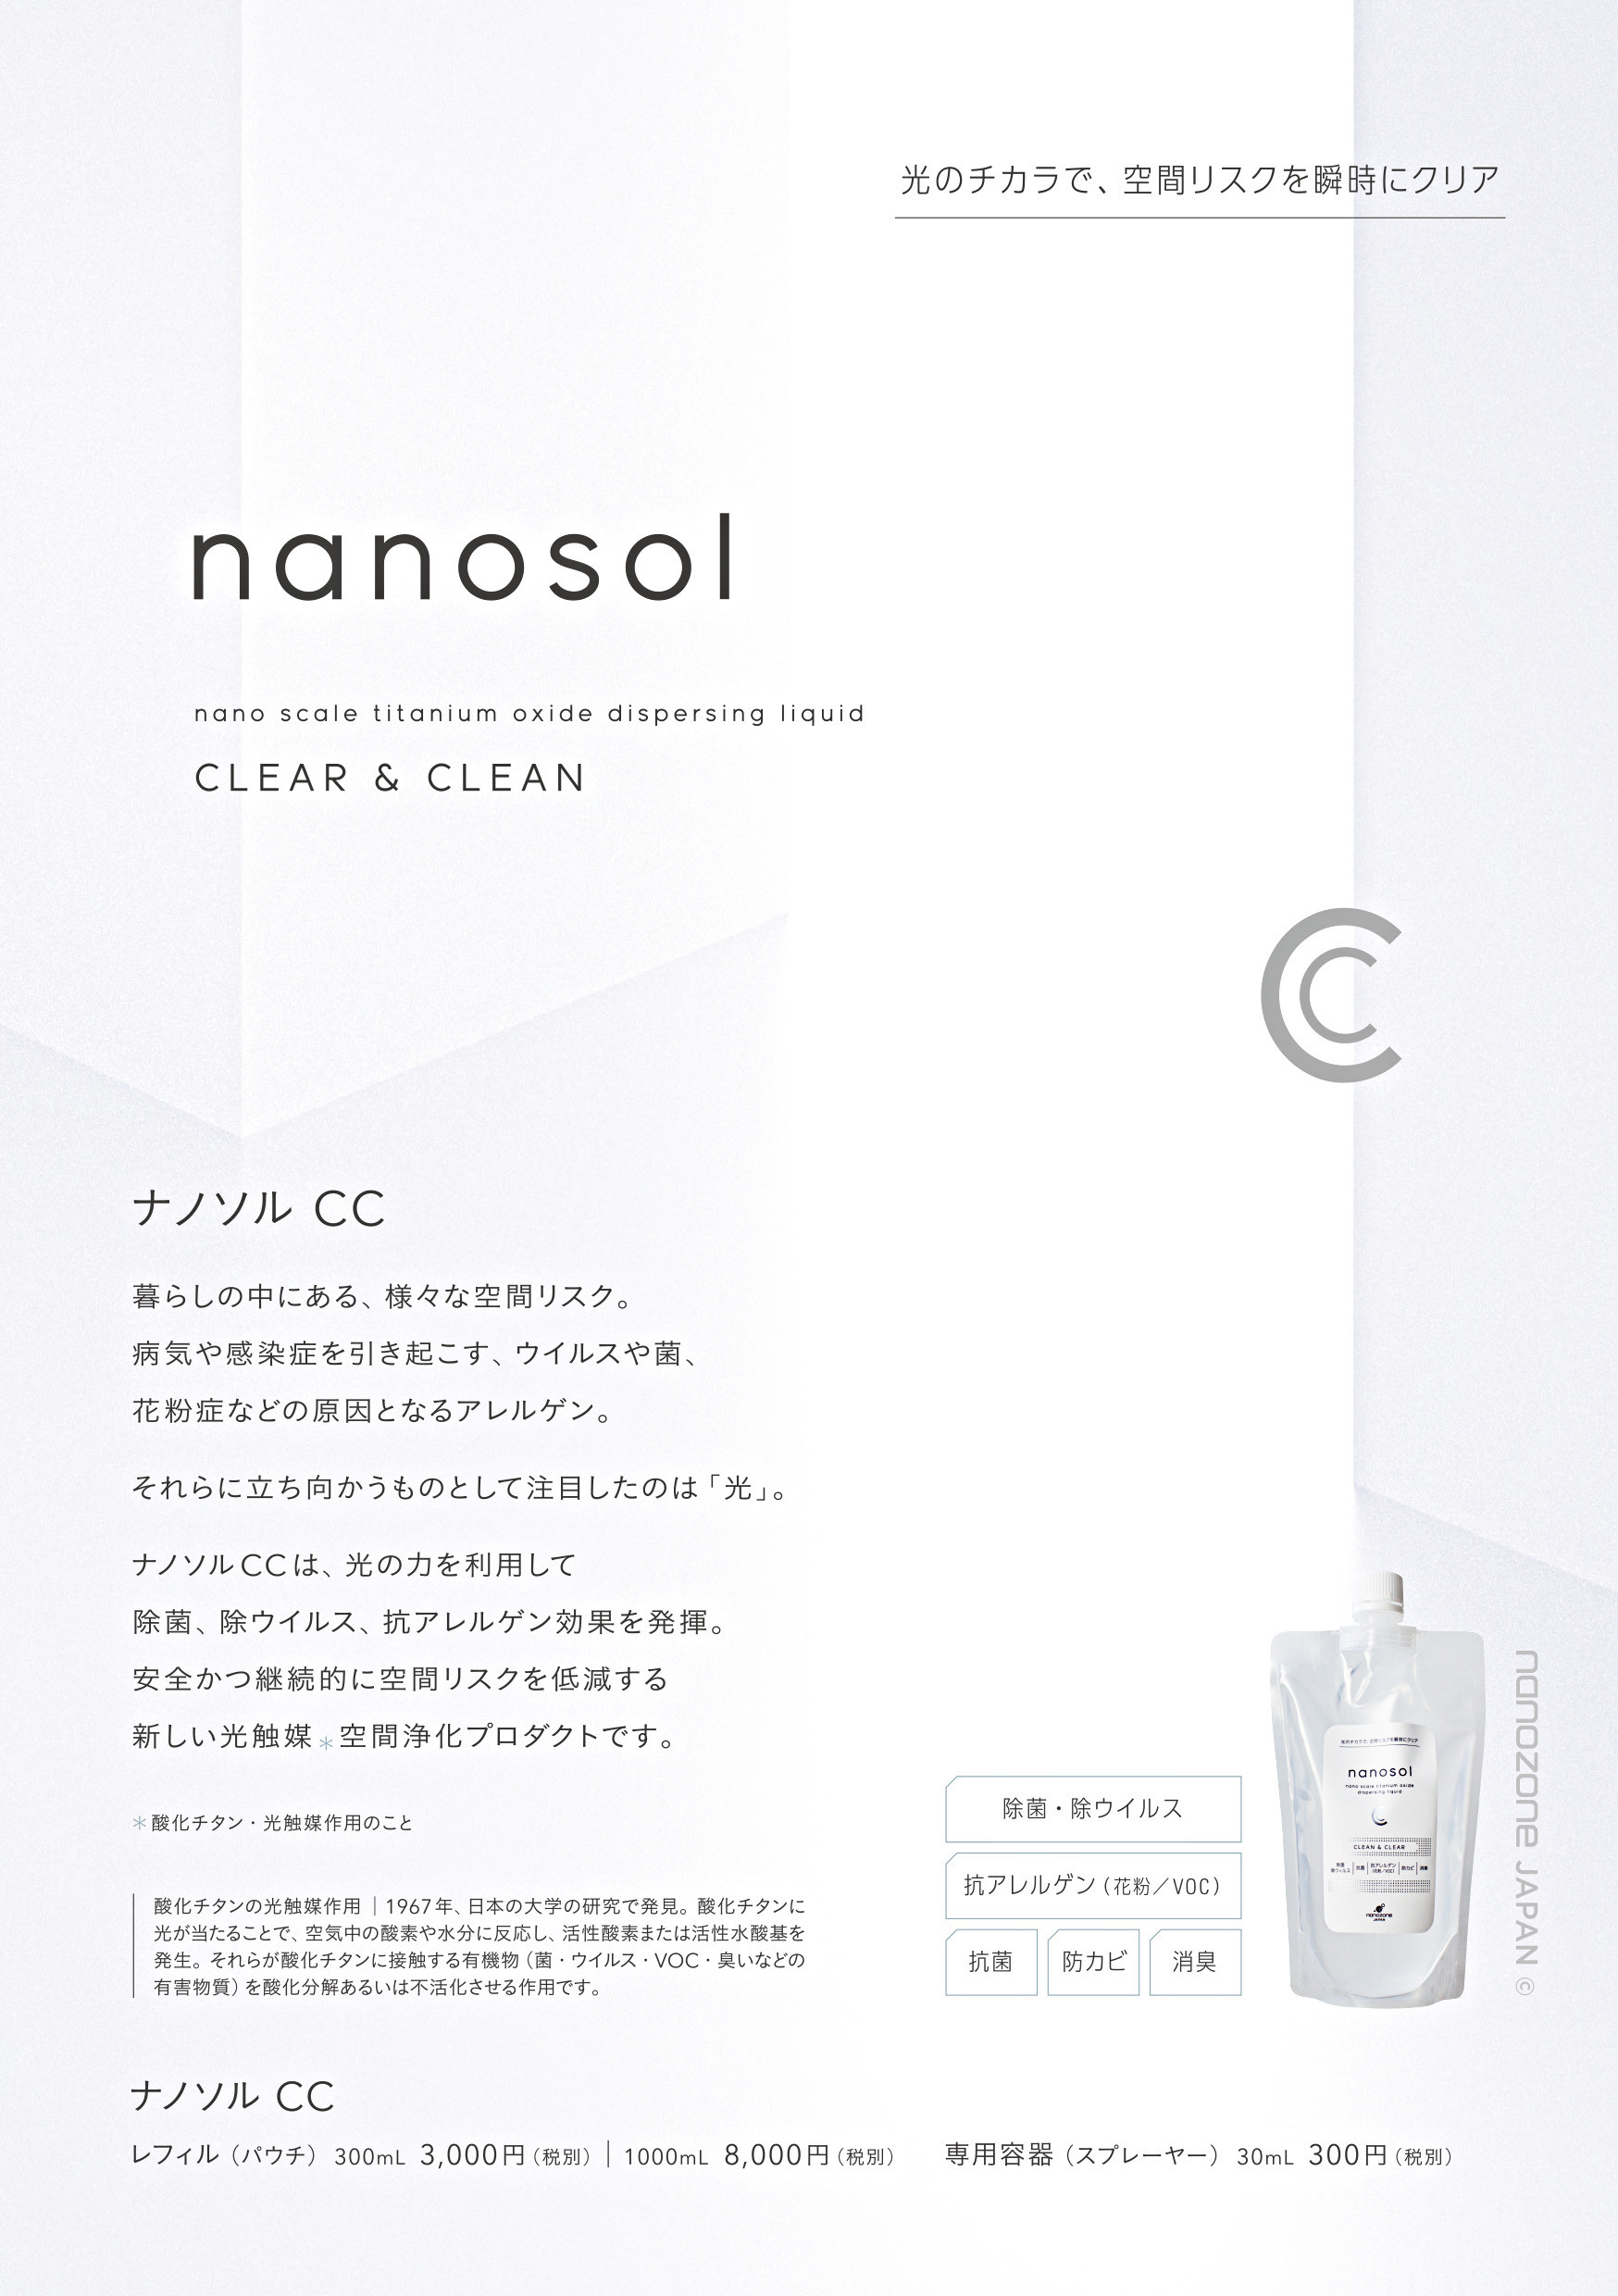 家庭用に改良されたナノソルCCもあります。